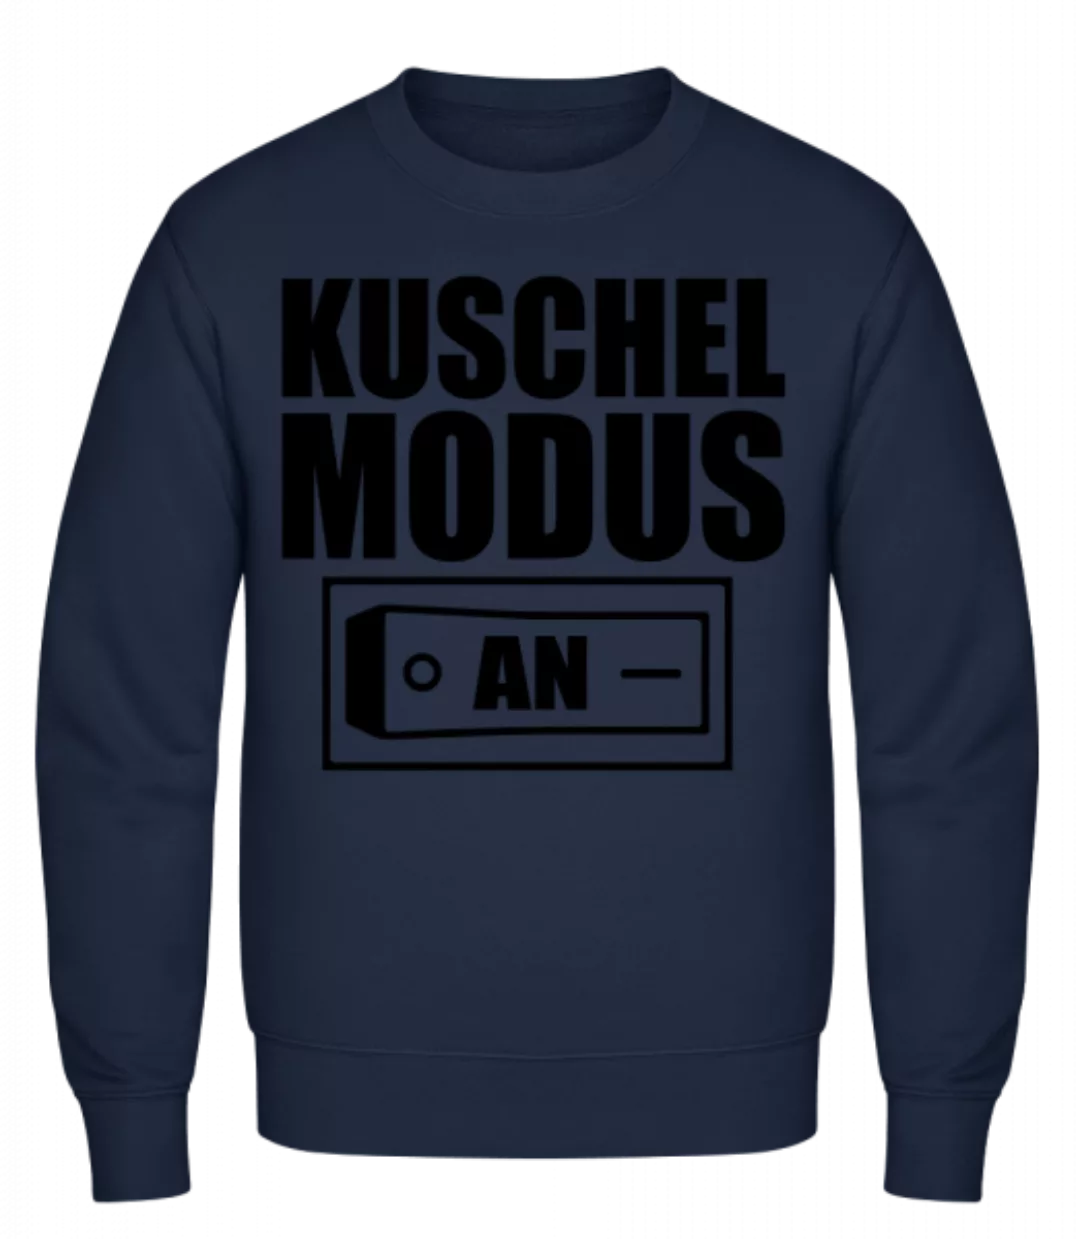 Kuschel Modus An · Männer Pullover günstig online kaufen